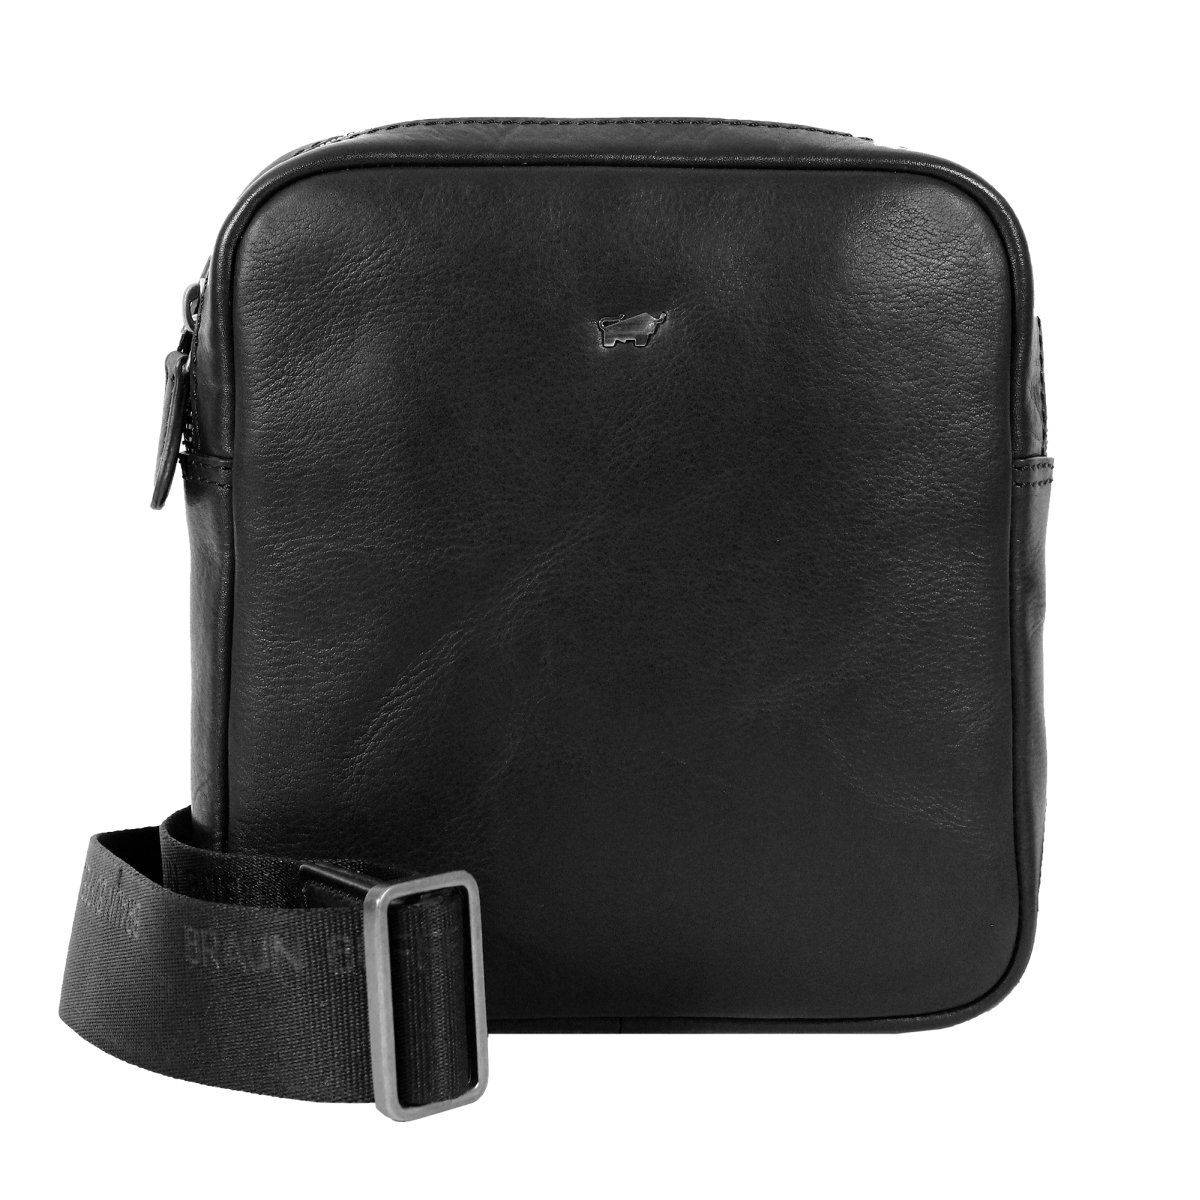 Сумка репортер Braun Buffel PARMA Shoulder Bag XS 75361, цвет черный, размер ONE SIZE - фото 1